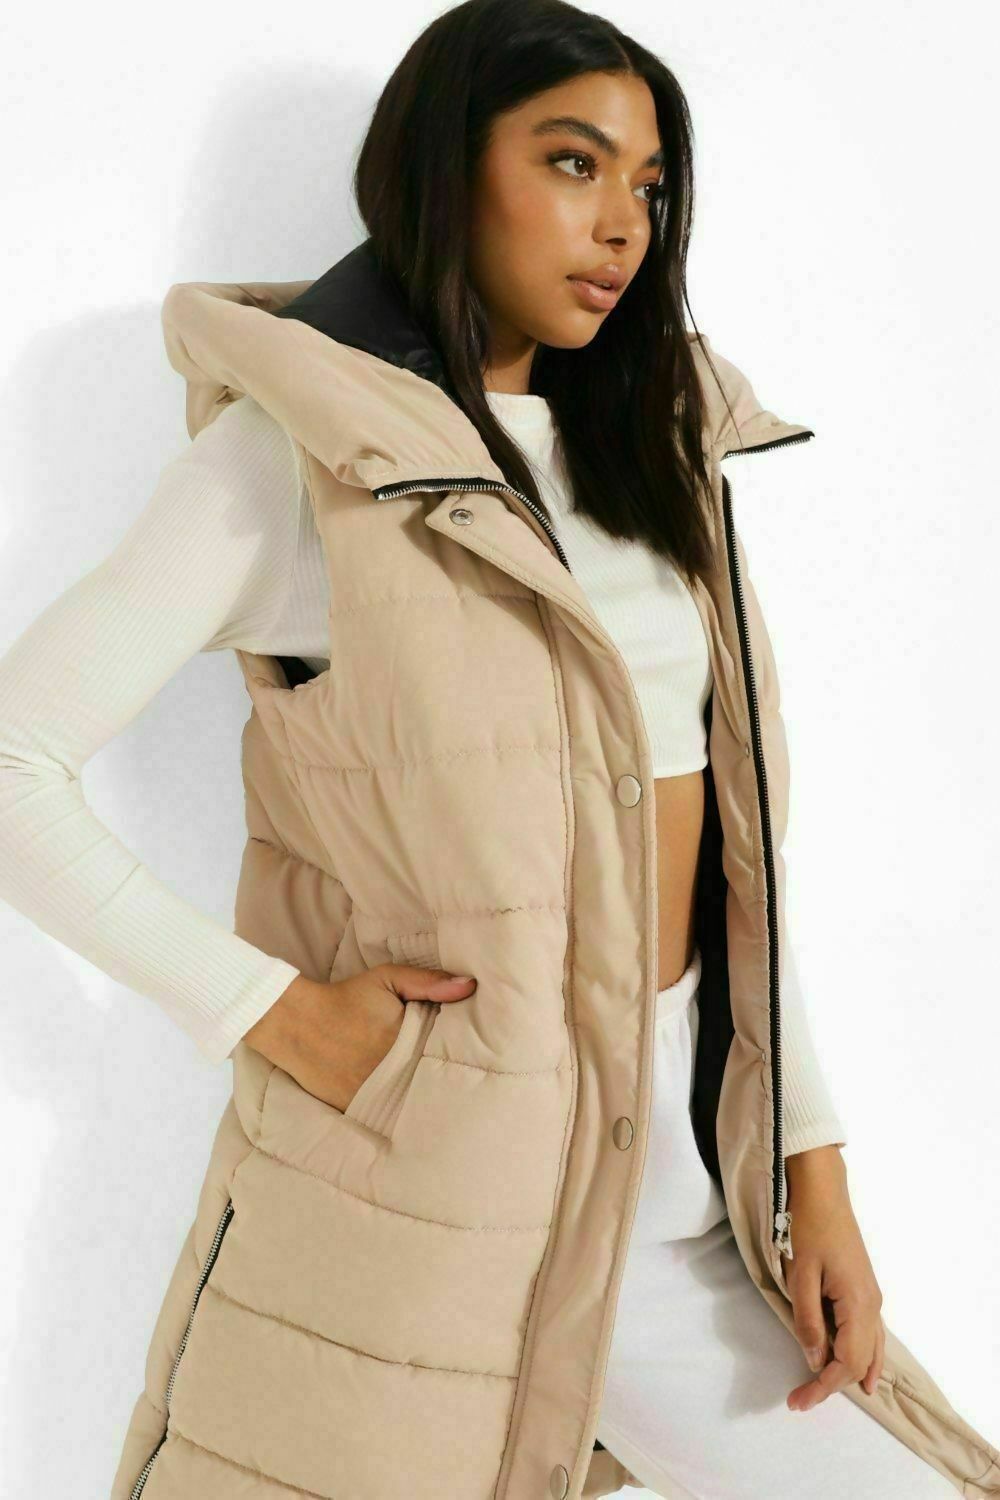 women longline puffer gilet hooded jacket